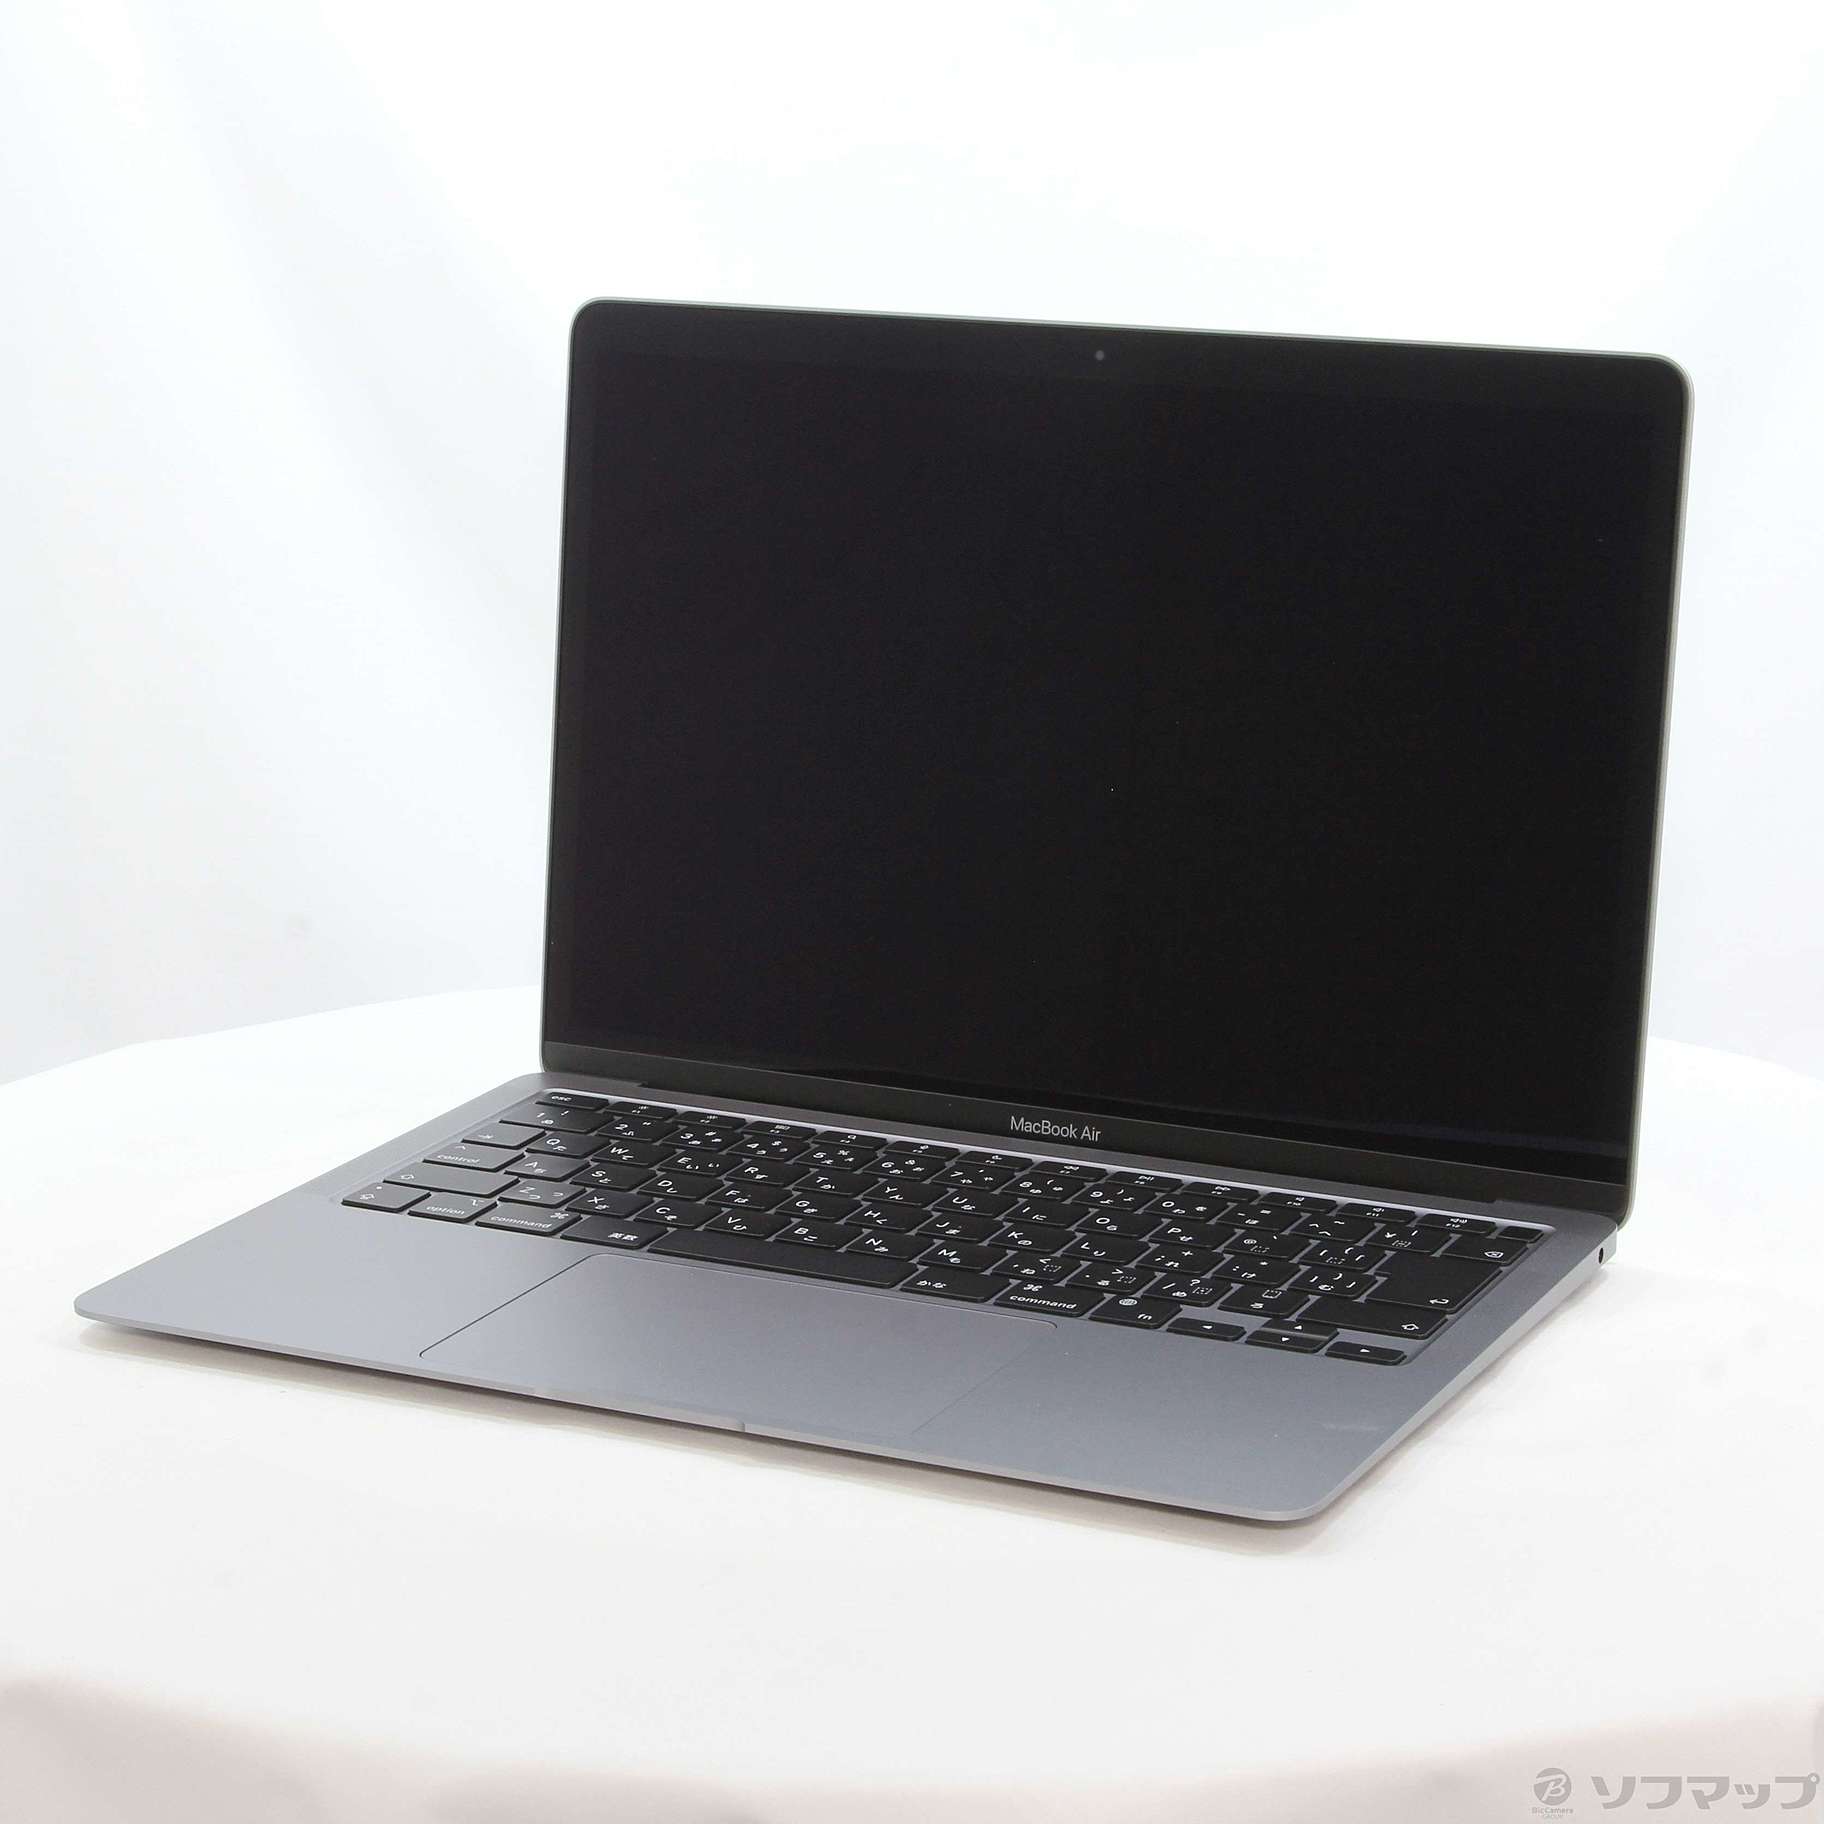 通販セール価格  MGN63J/A） （2020 Air MacBook ノートPC